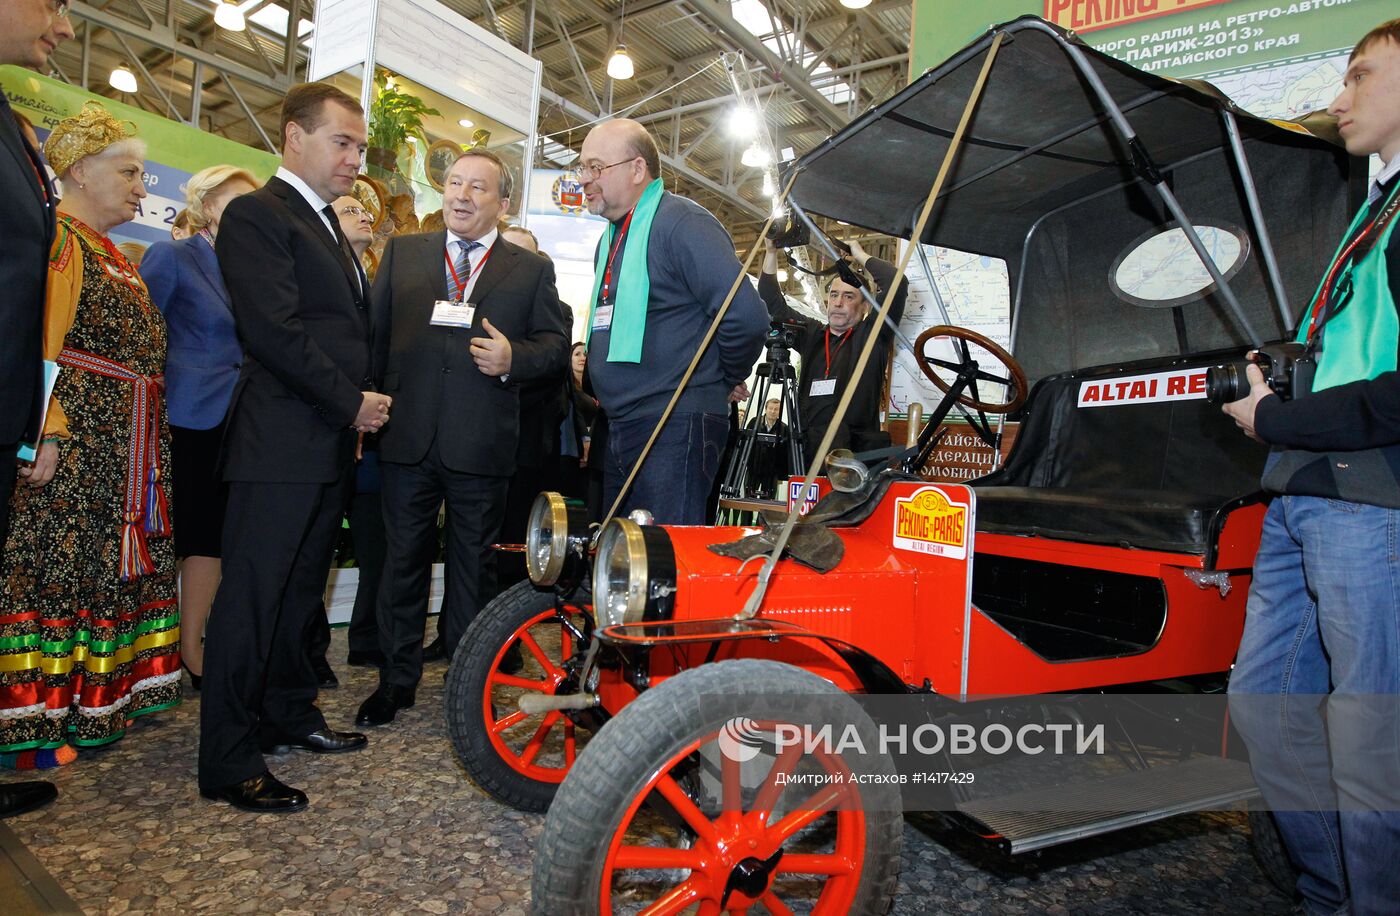 Посещение Д.Медведевым выставки "Интурмаркет (ITM) - 2013"